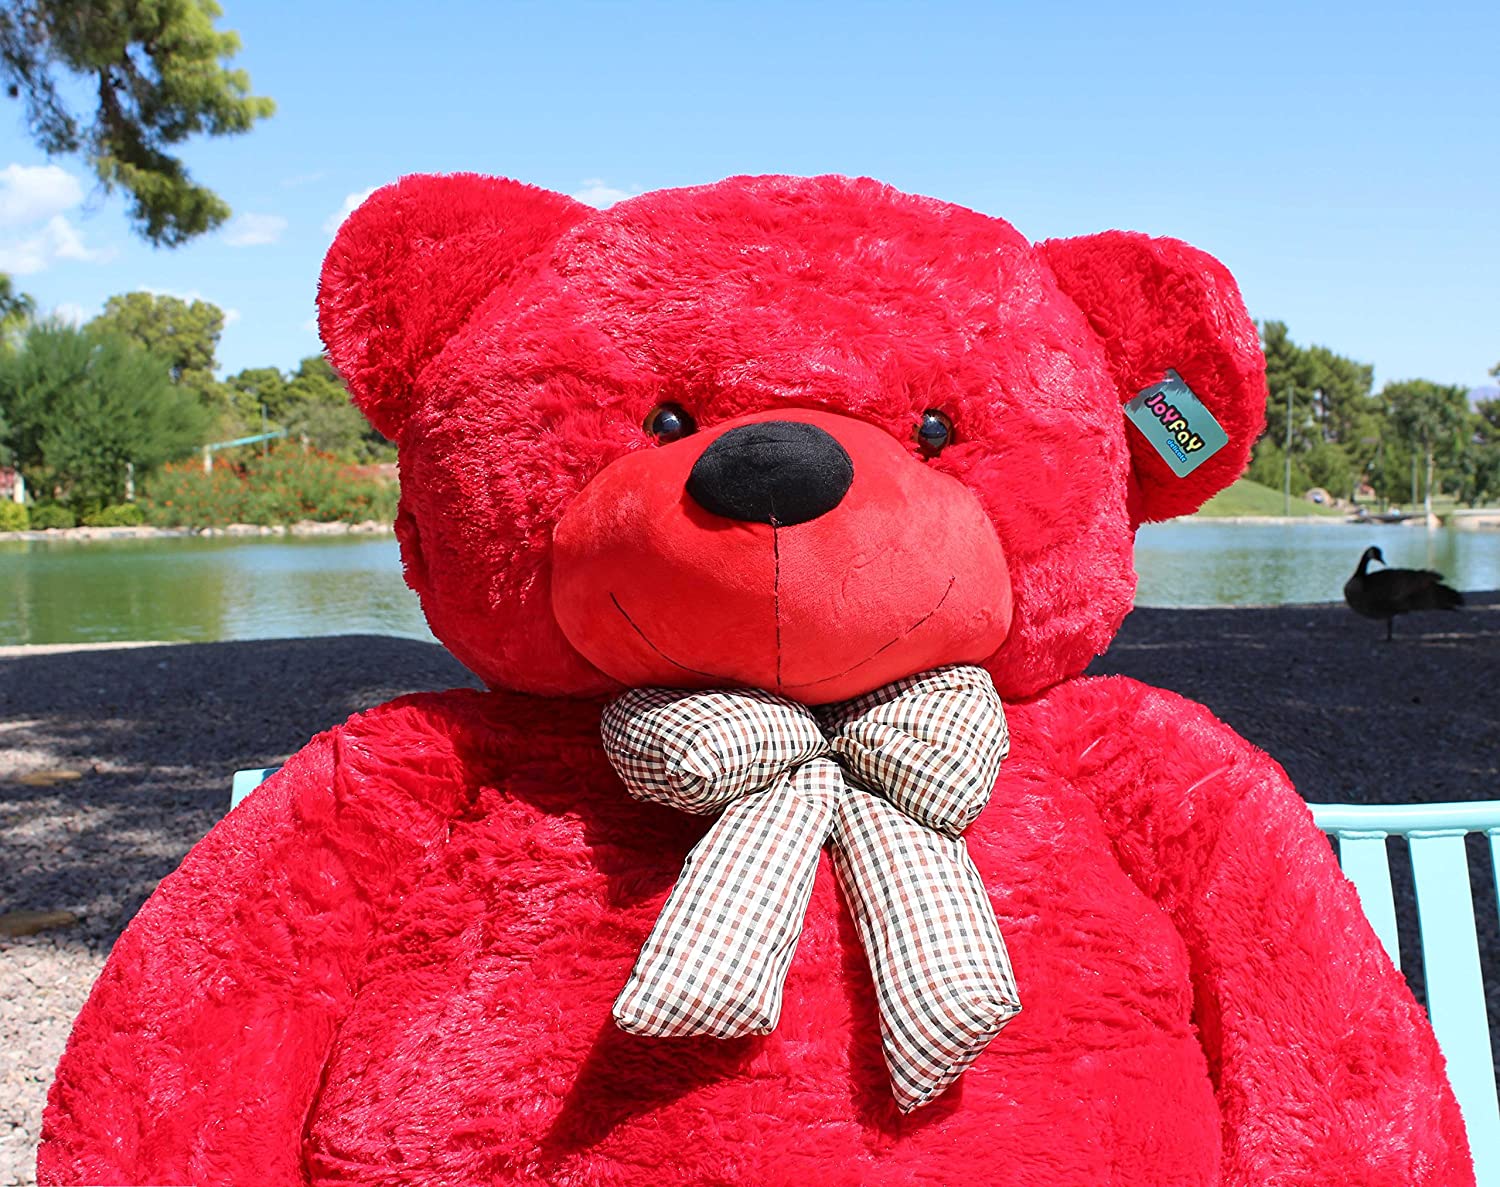 Why Do People Just Love Giant Teddy Bears? - Joyfay